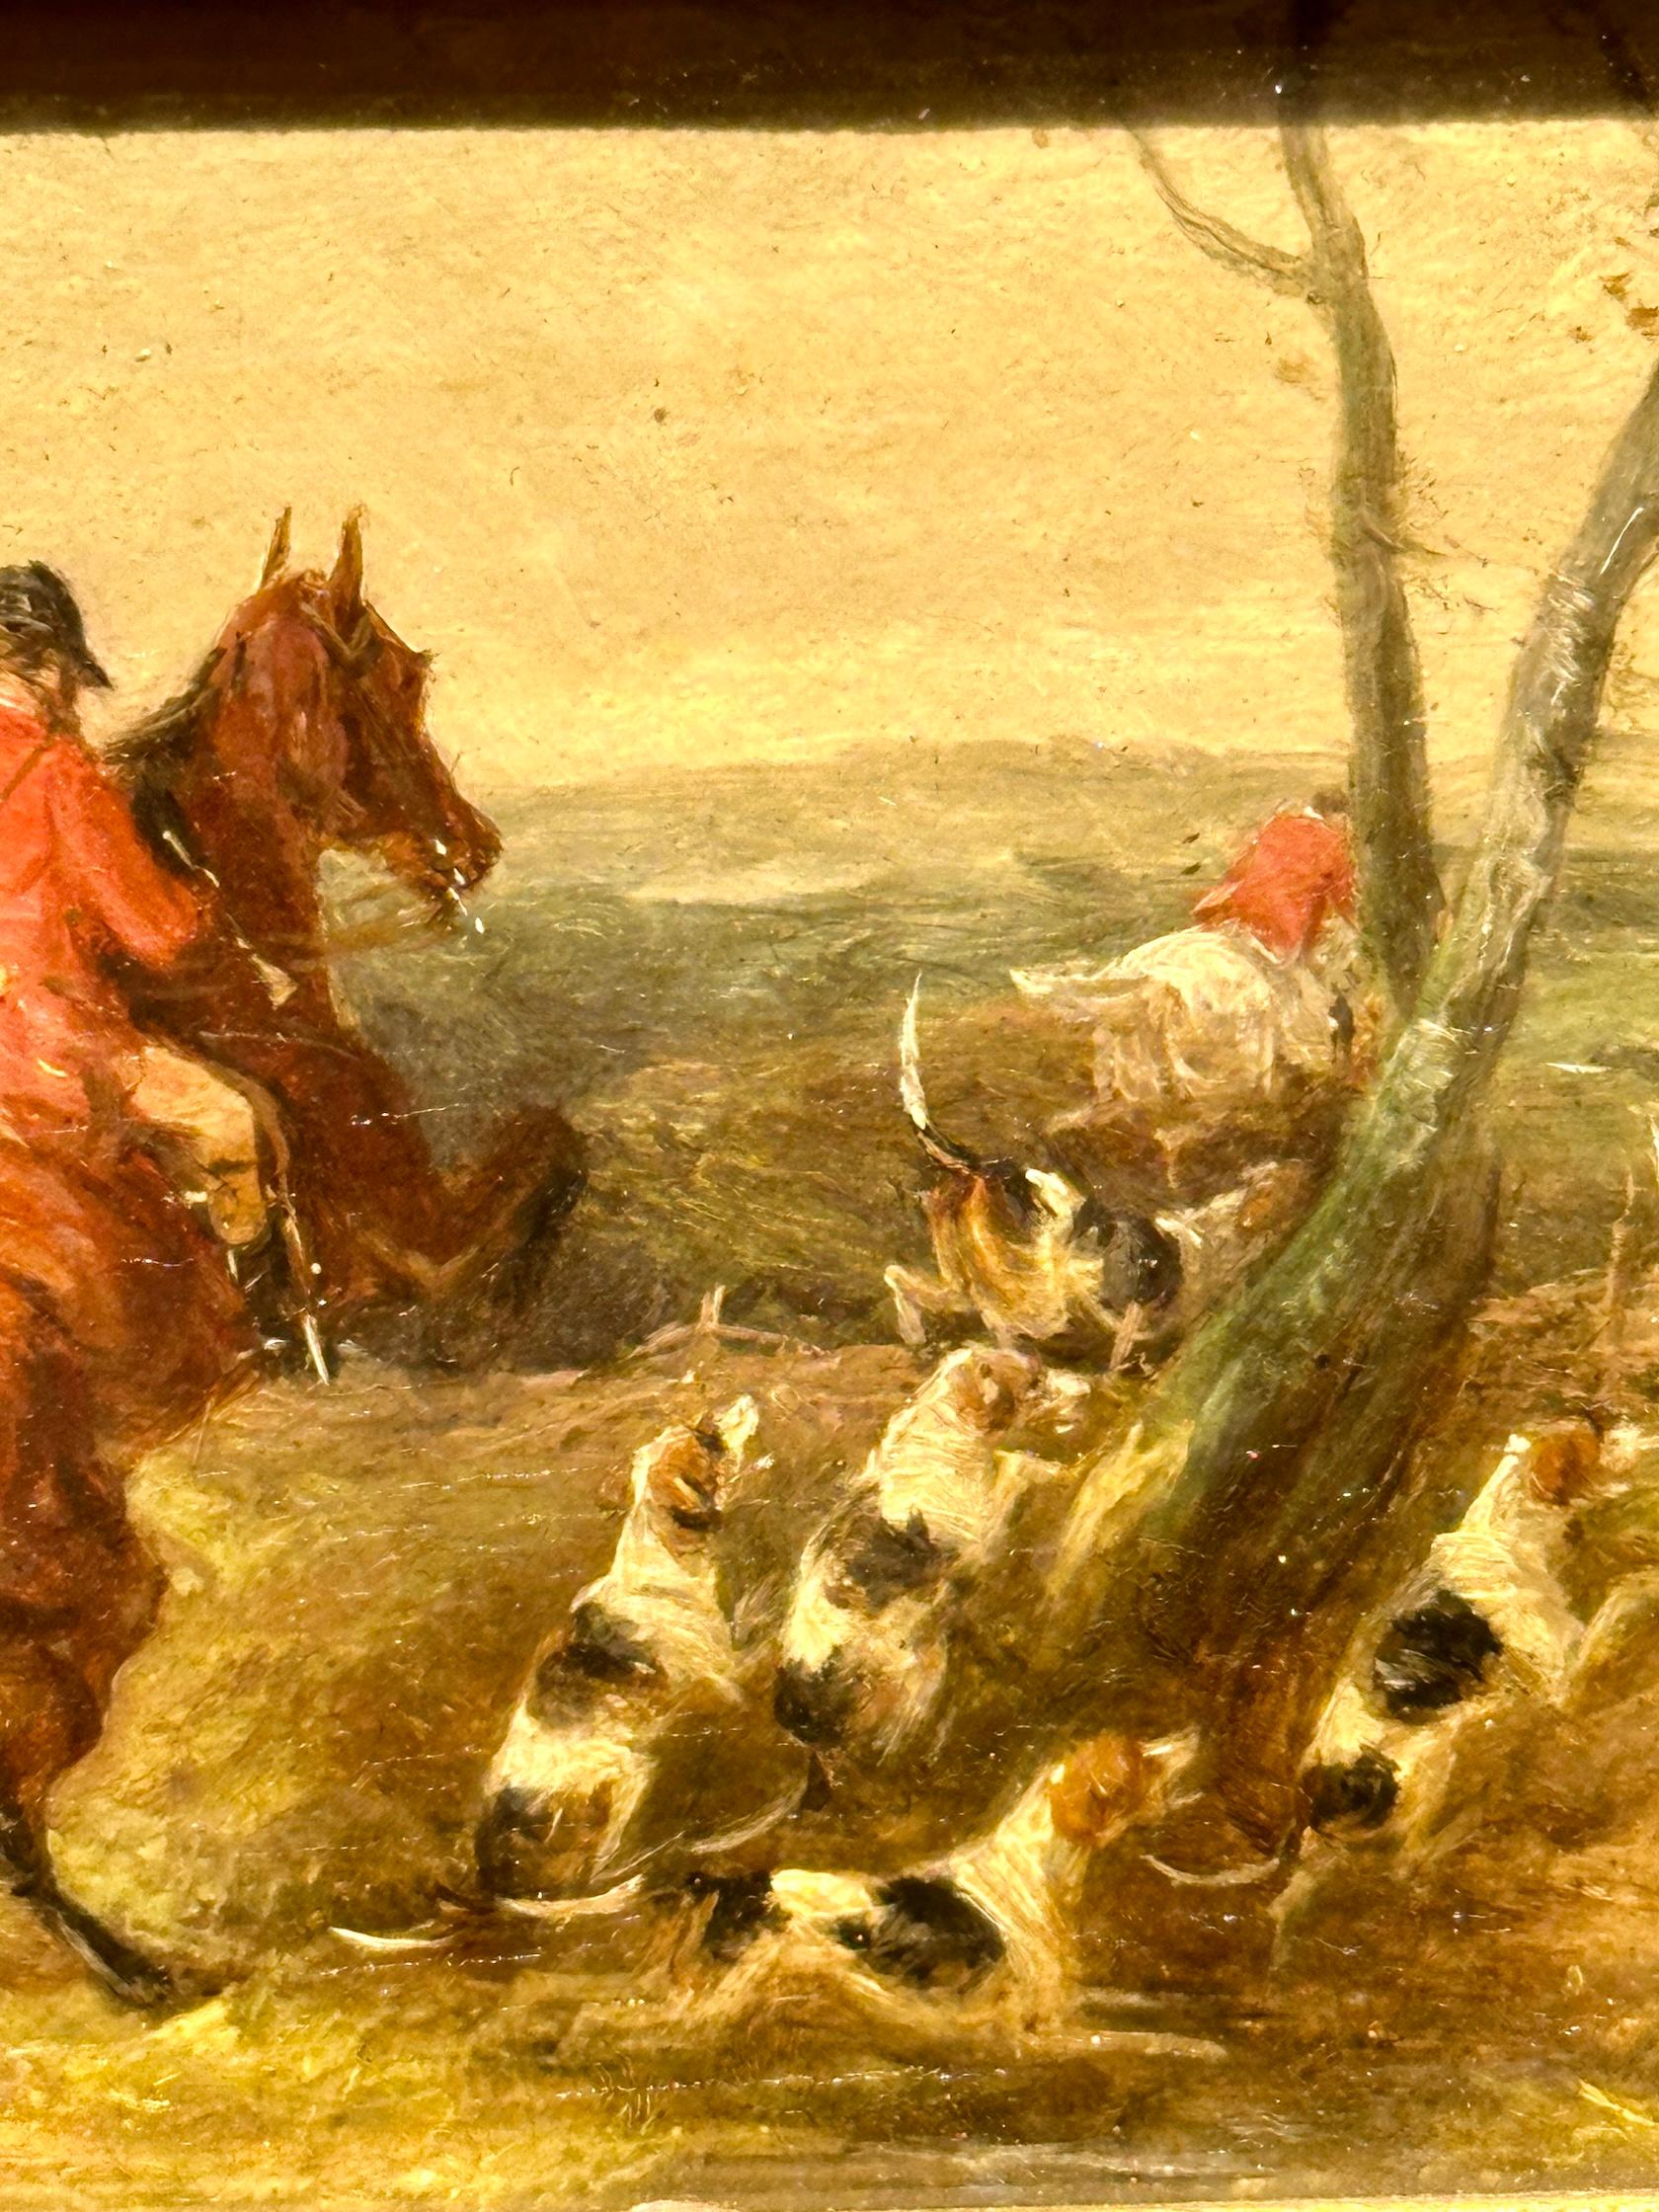 Englischer Fuchsjagd auf seinem Pferd aus dem 19. Jahrhundert Öl in einer Landschaft mit Fuchshunden – Painting von William Joseph Shayer